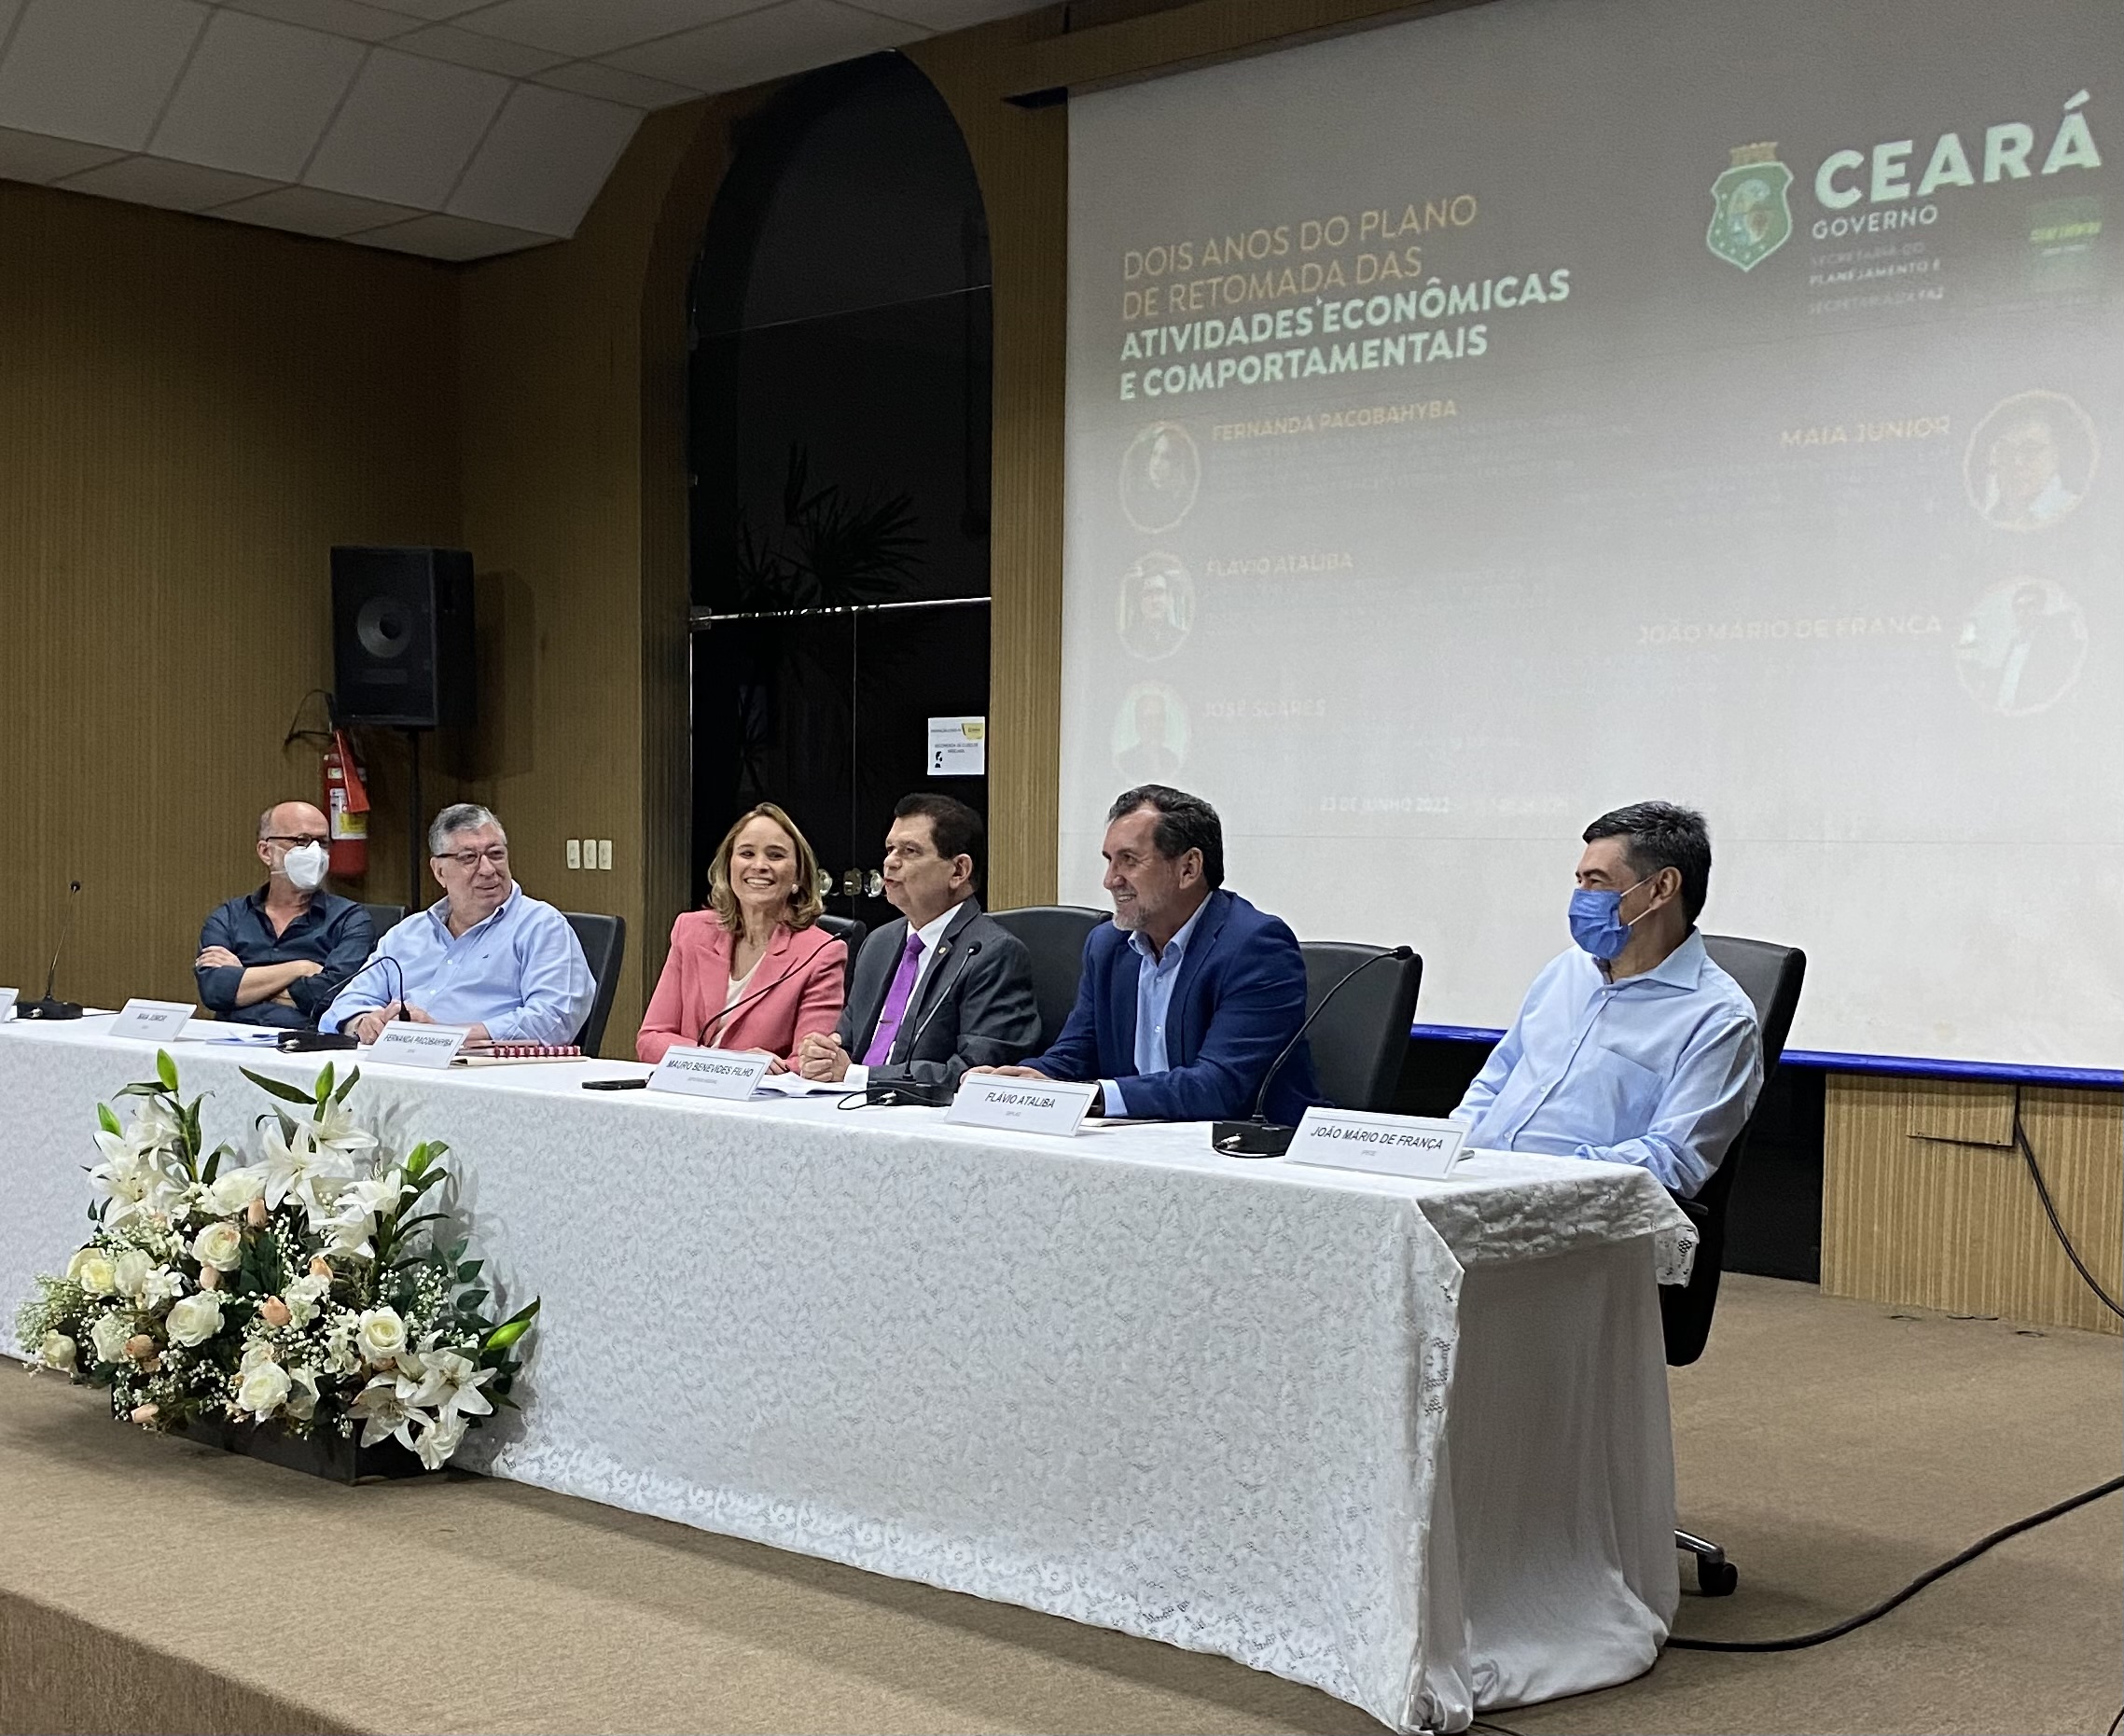 Medidas adotadas pelo Governo do Ceará permitiram preservar vidas e recuperar a economia